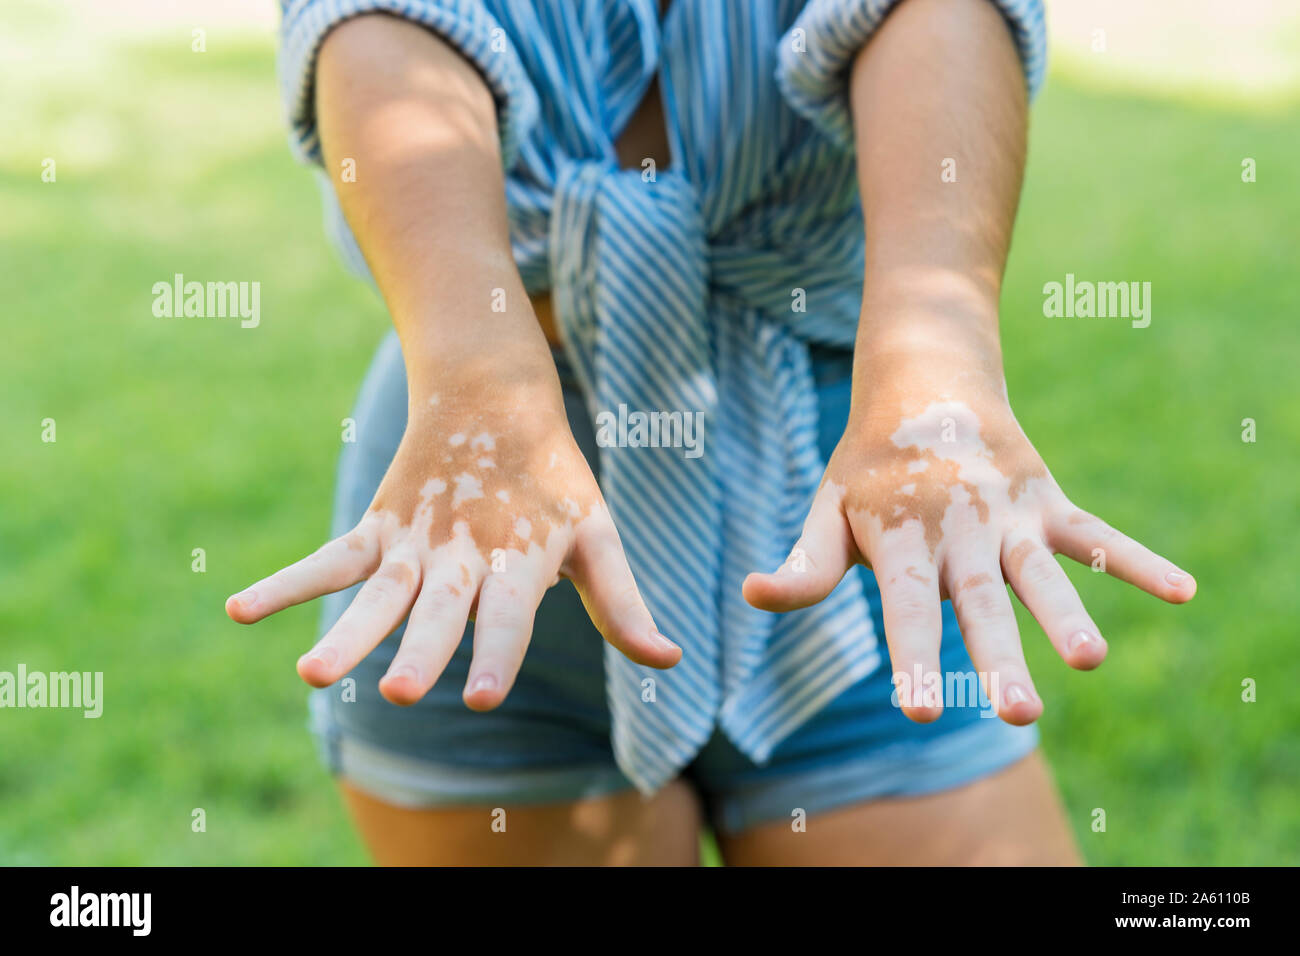 Détail des mains d'une fille avec la dépigmentation de la peau ou le vitiligo Banque D'Images